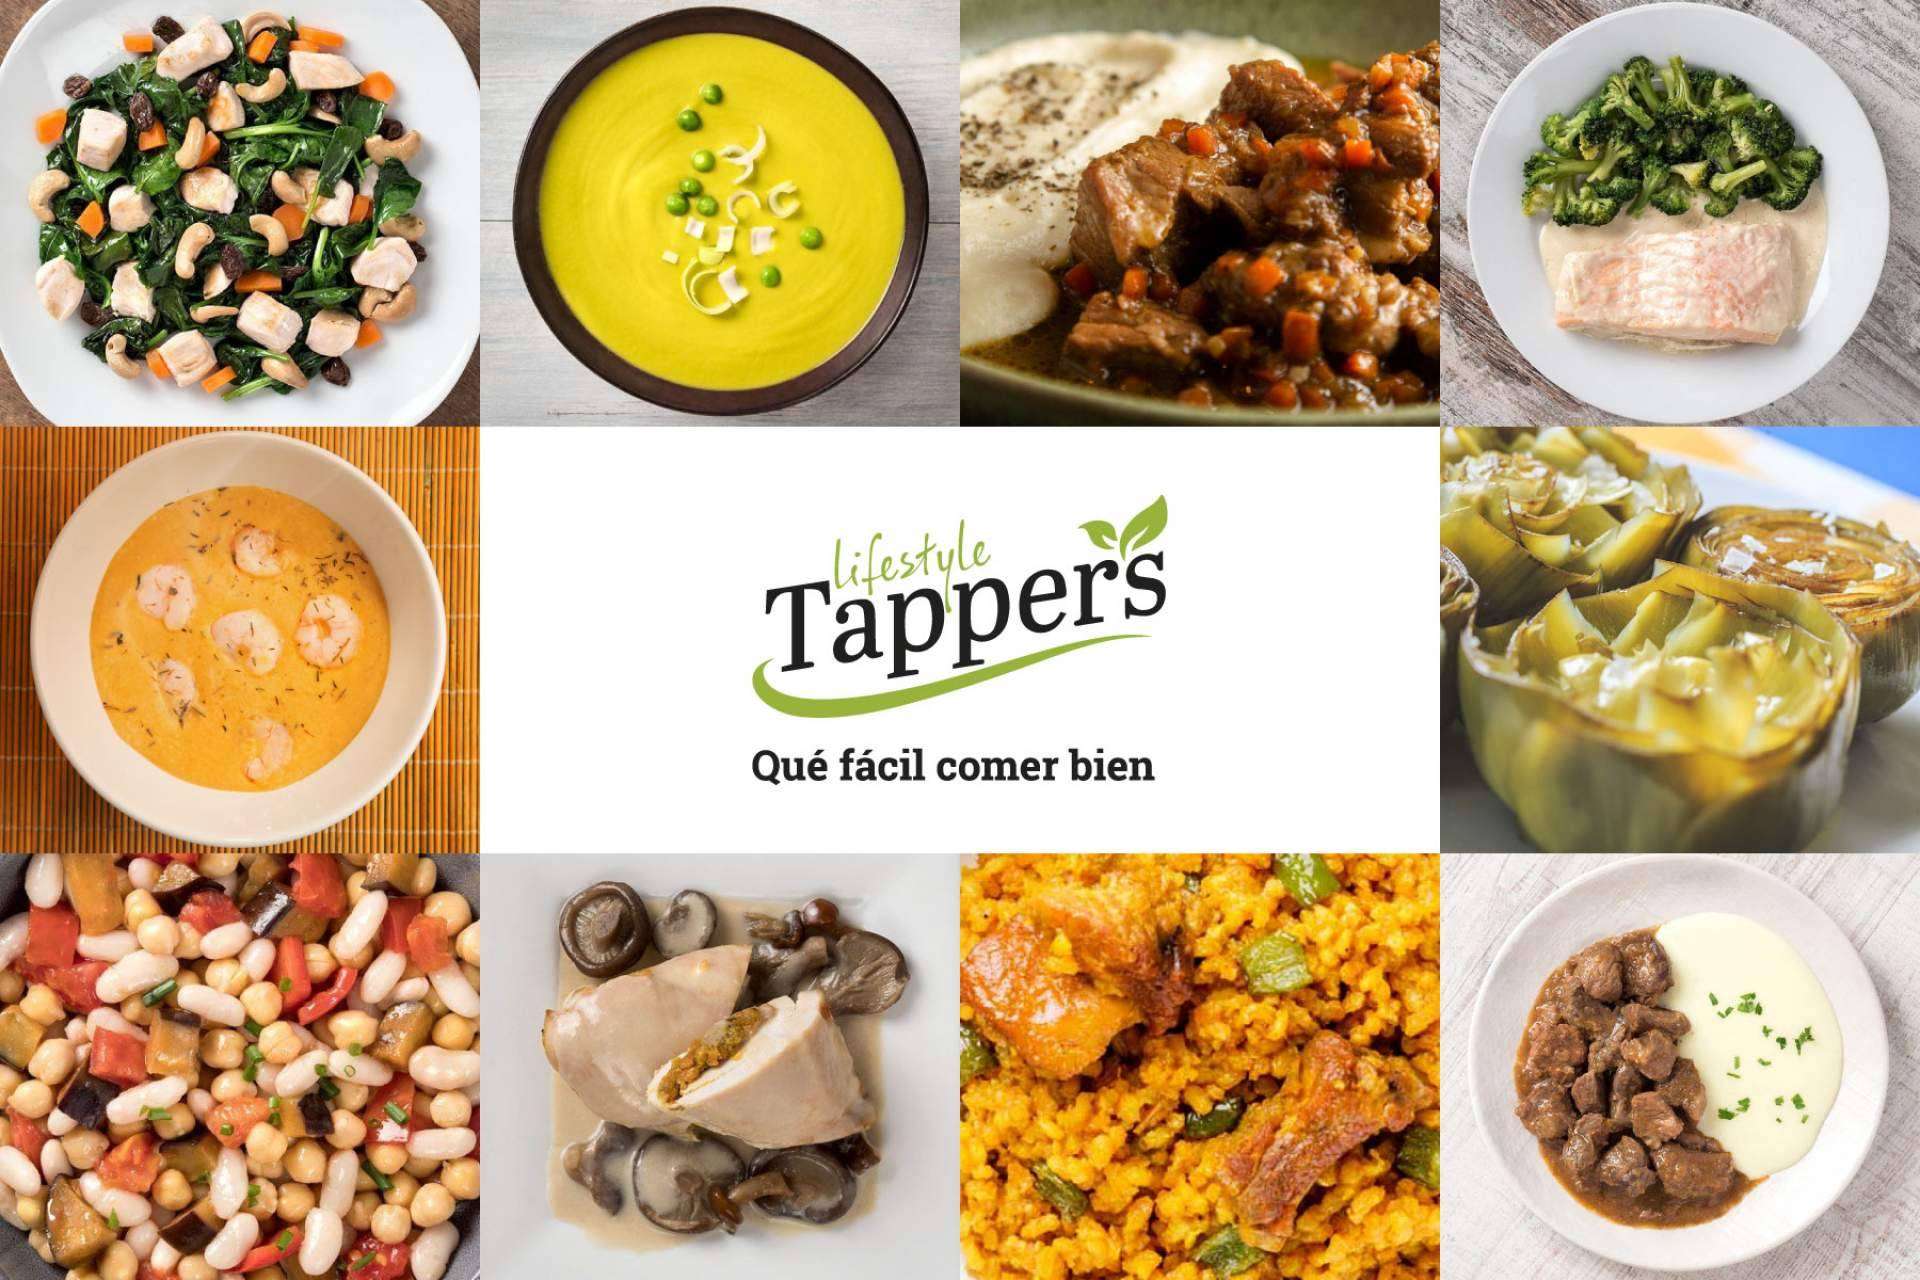 Tappers Lifestyle ofrece algunas de las mejores opciones sin gluten